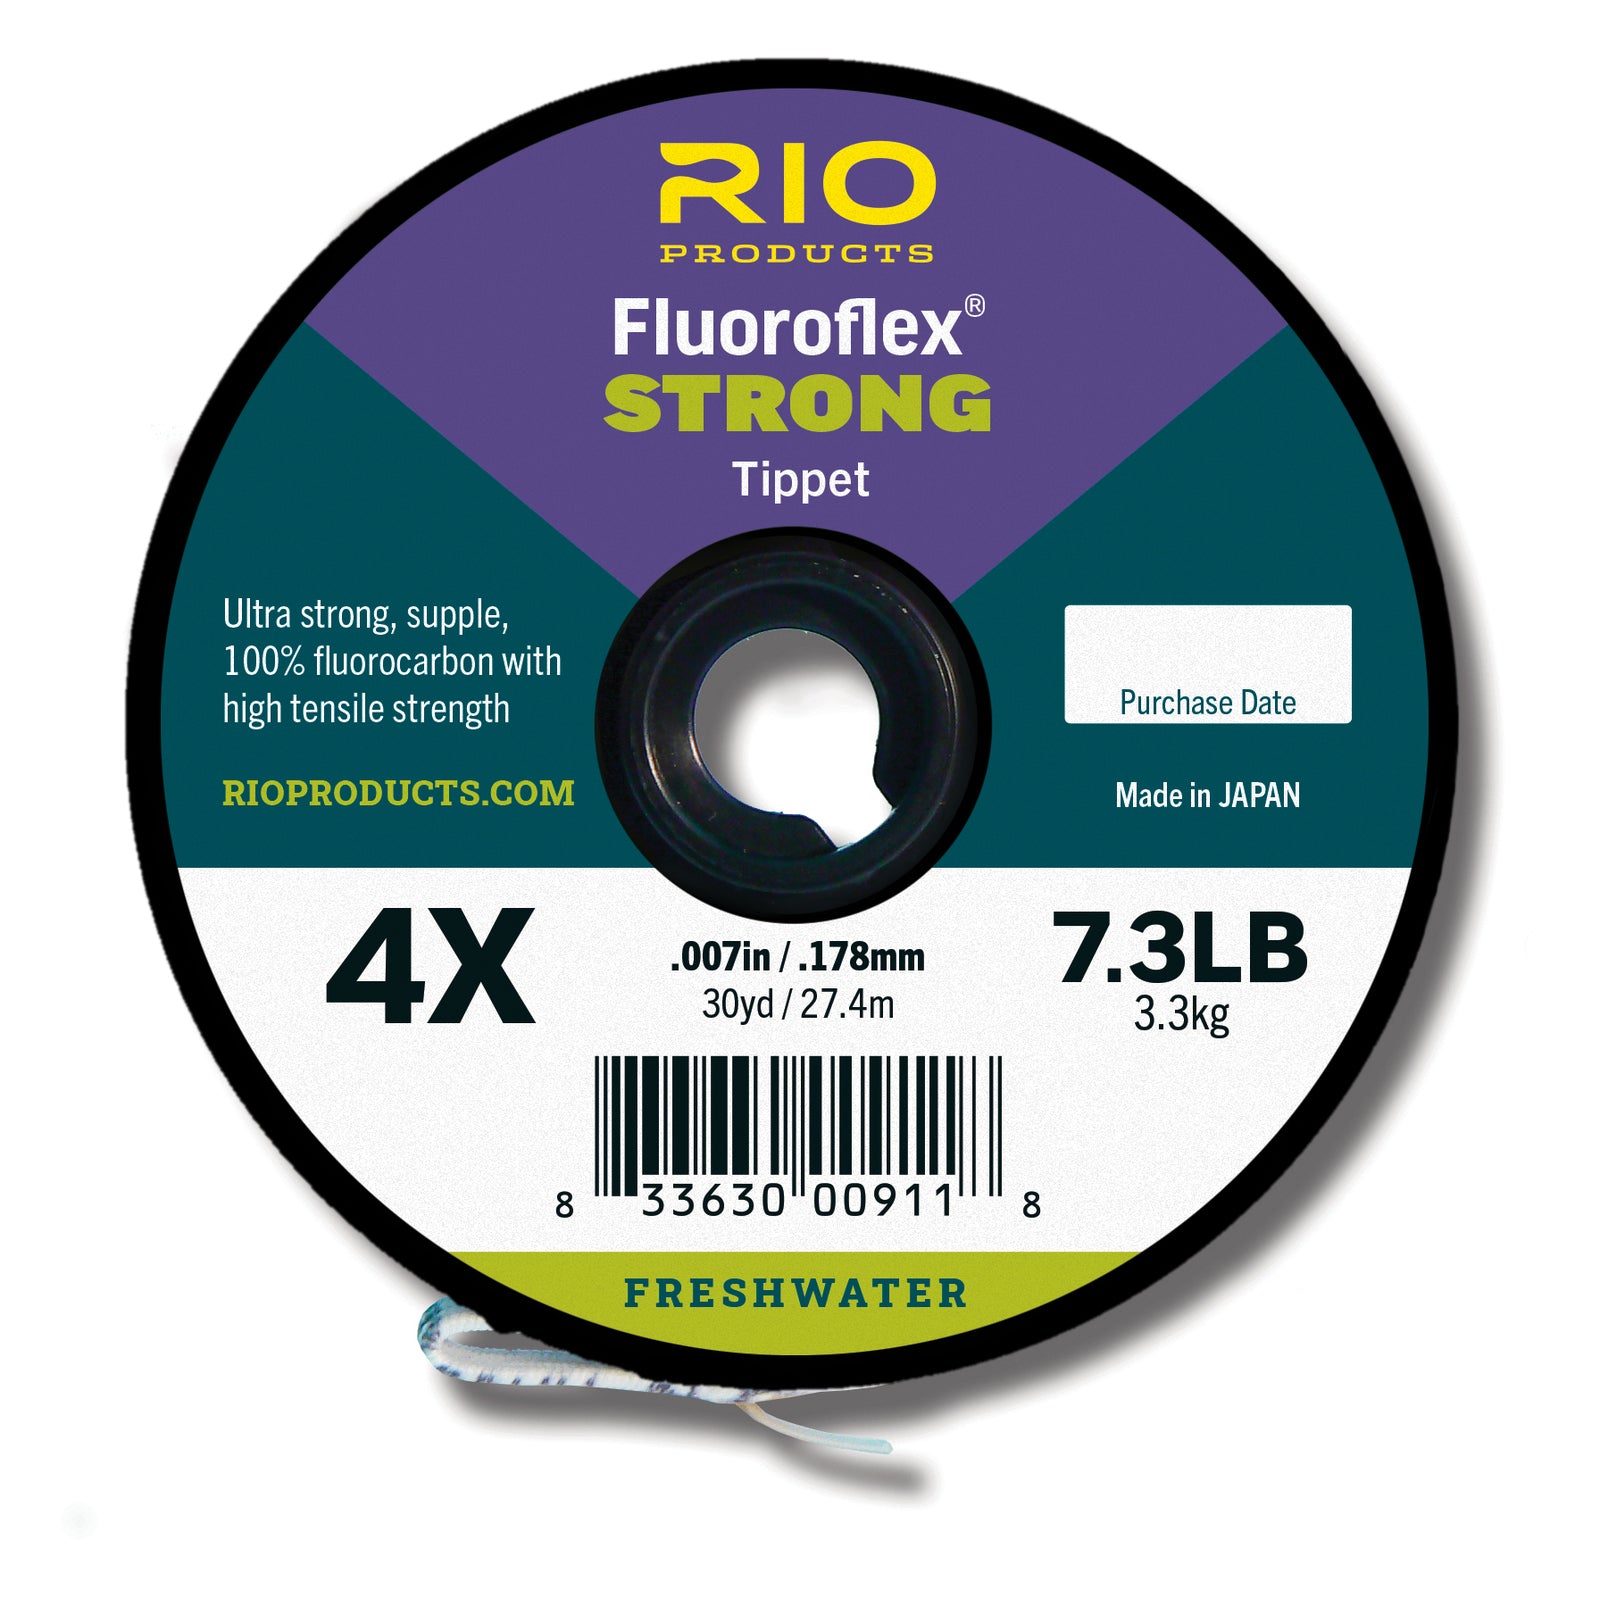 RIO Fluoroflex Strong Tippet - NEW!